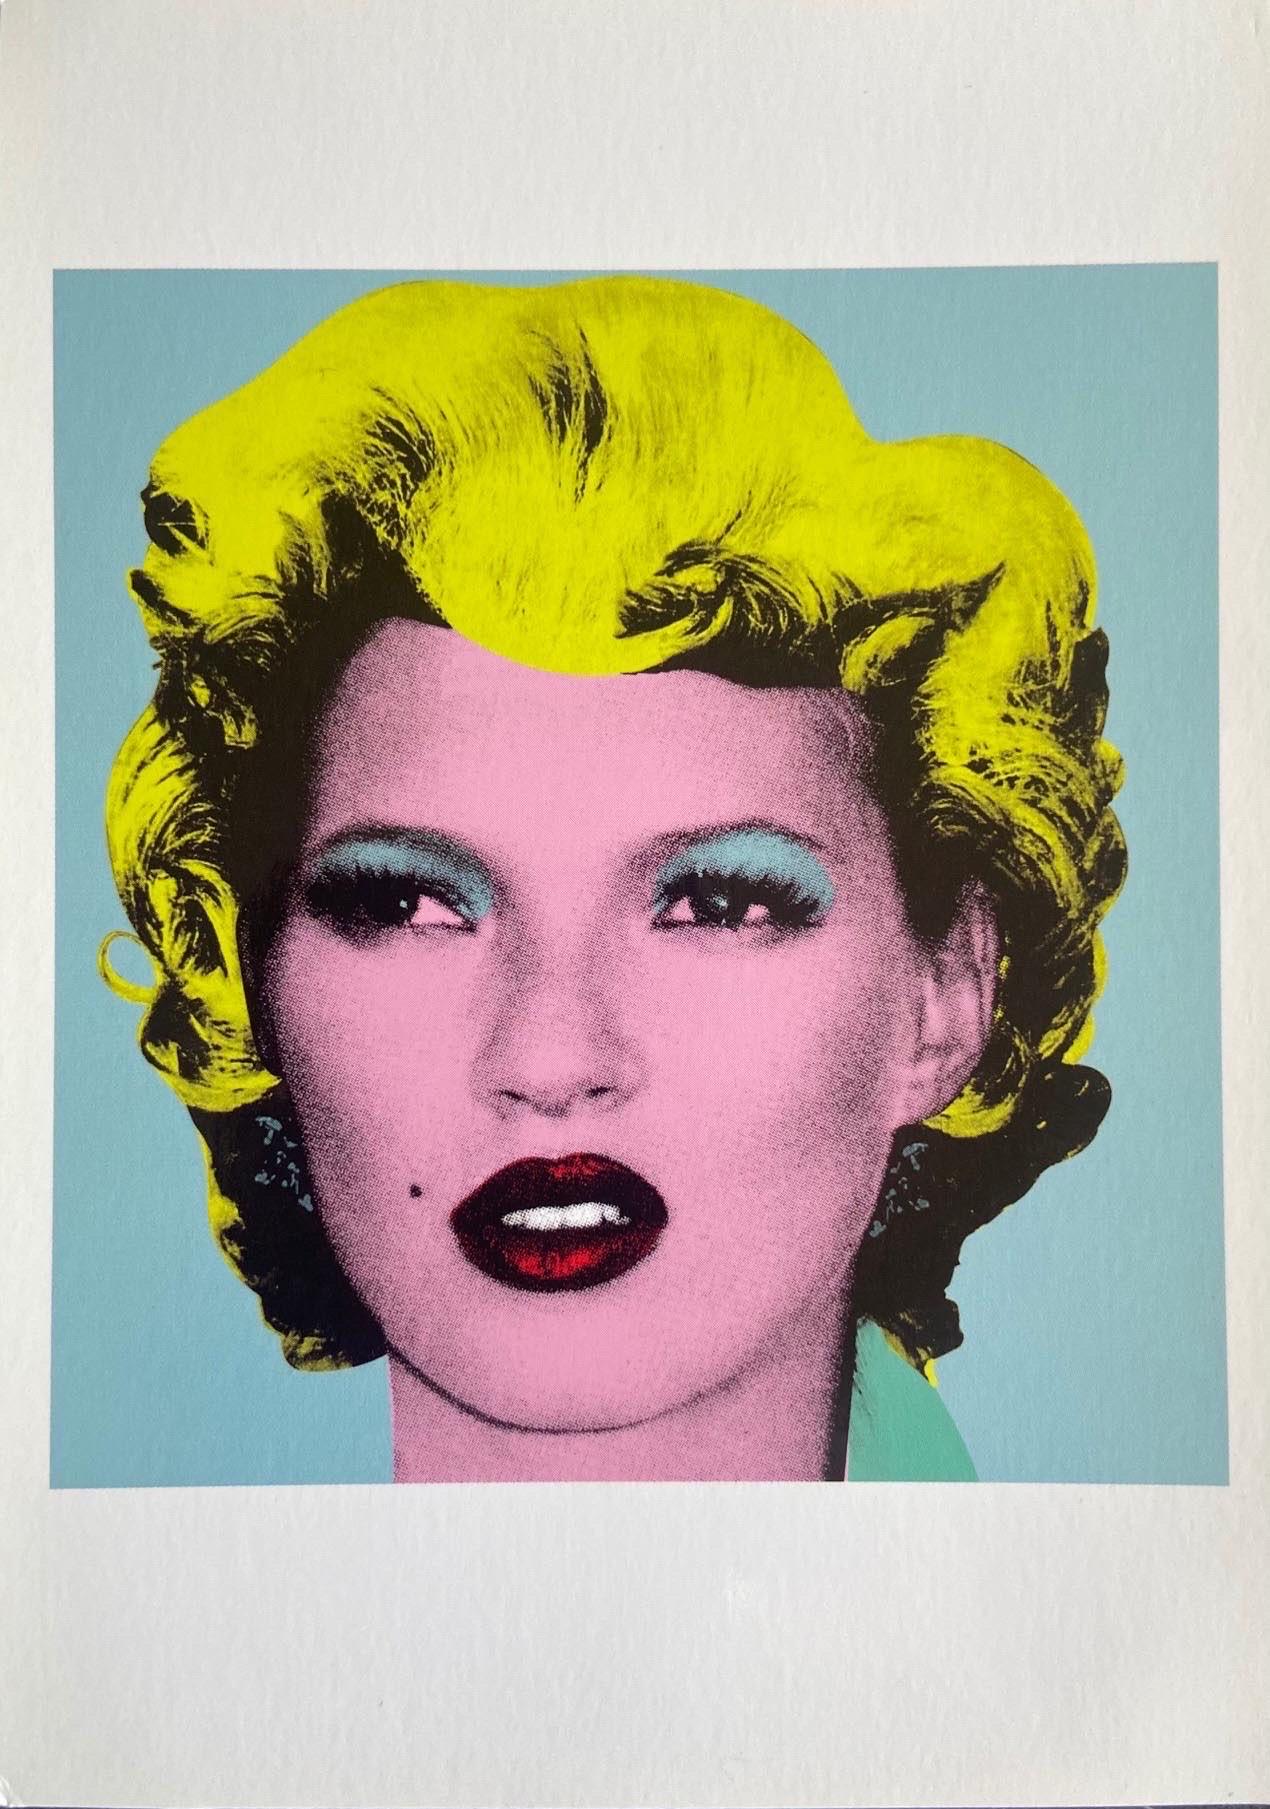 Banksy, Kate Moss, Postcard, 2005

Offsetlithographie auf Postkarte

10 x 15 cm  (3.93 x 5.90 in) 

Einladungspostkarte Rohöle 

Eine seltene Kate Moss-Postkarte, die ursprünglich 2005 für Banksys Crude Oils-Ausstellung mit neu gemischten